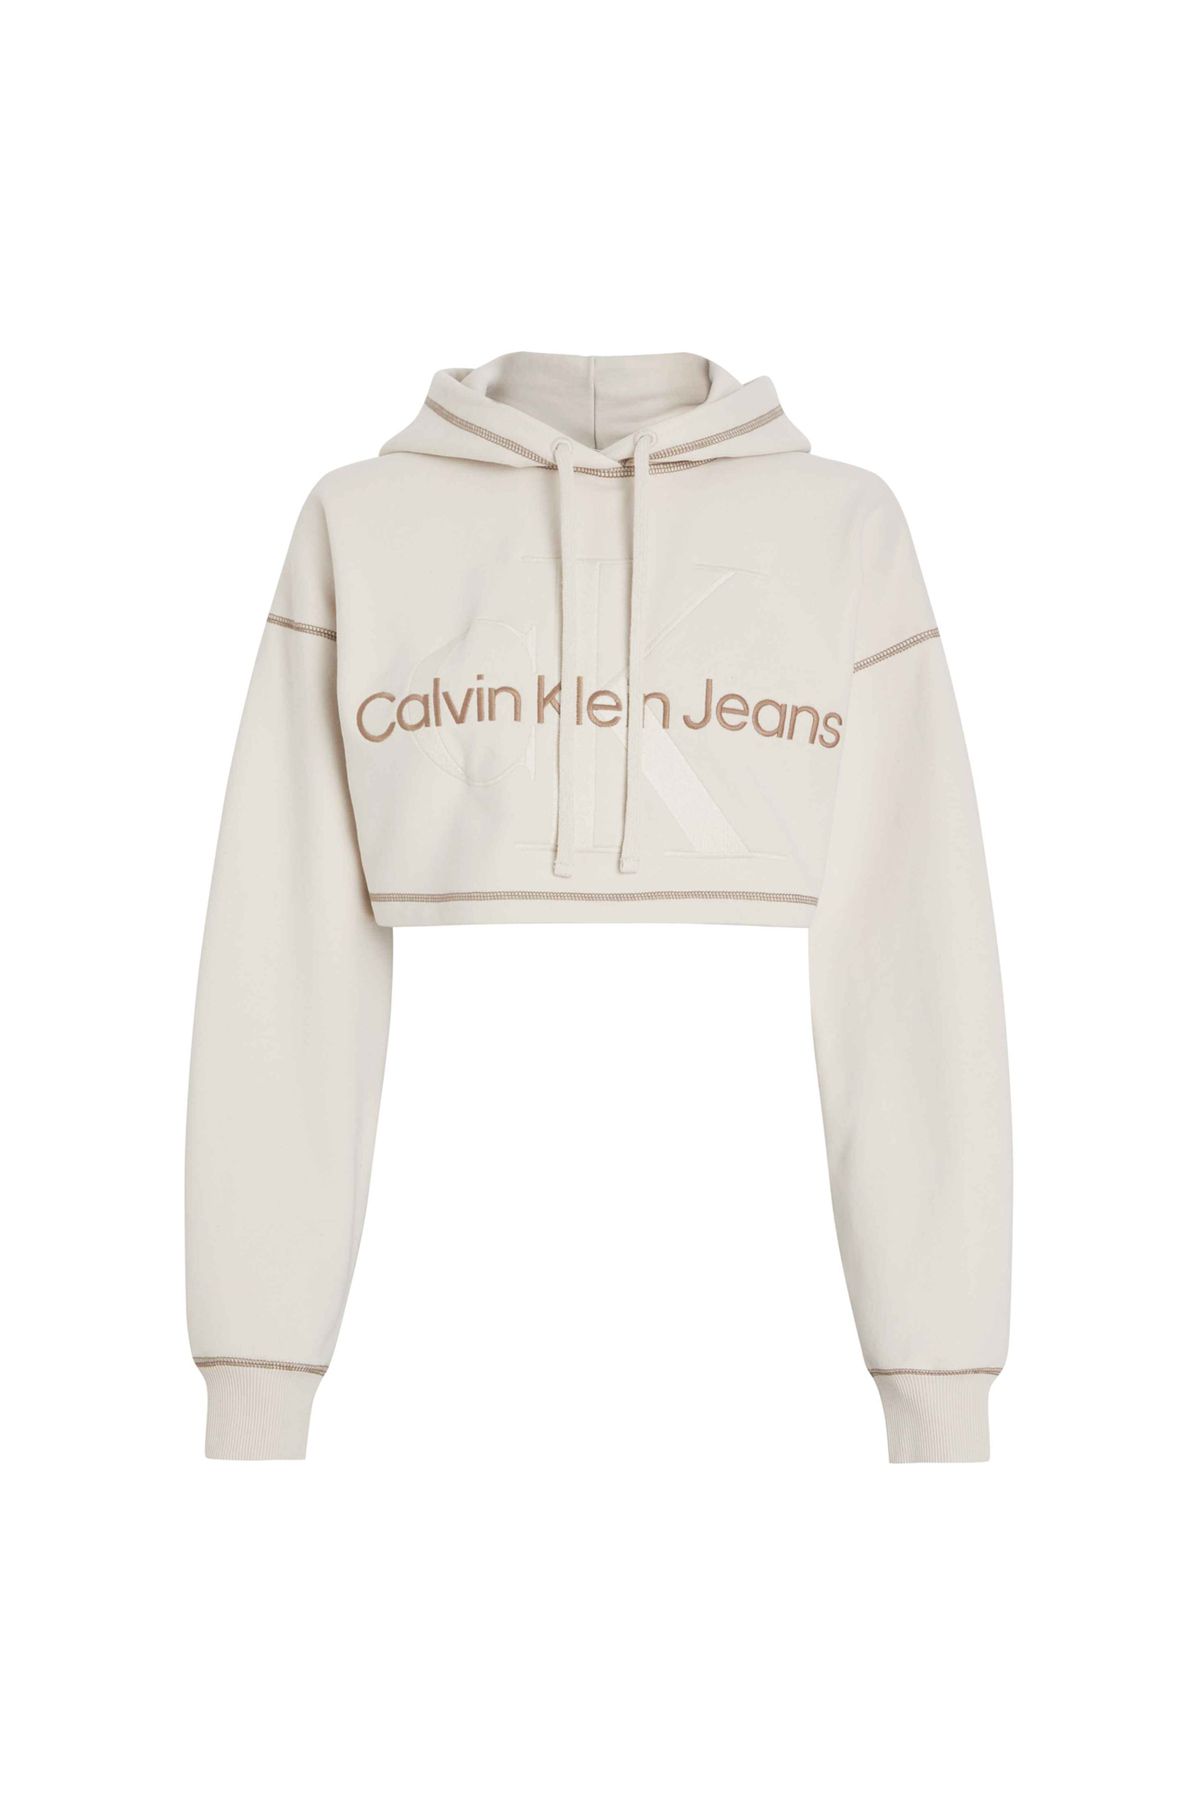 Calvin Klein Jeans Kapüşon Yaka Nakışlı Ekru Kadın Sweatshırt J20j222540ybı